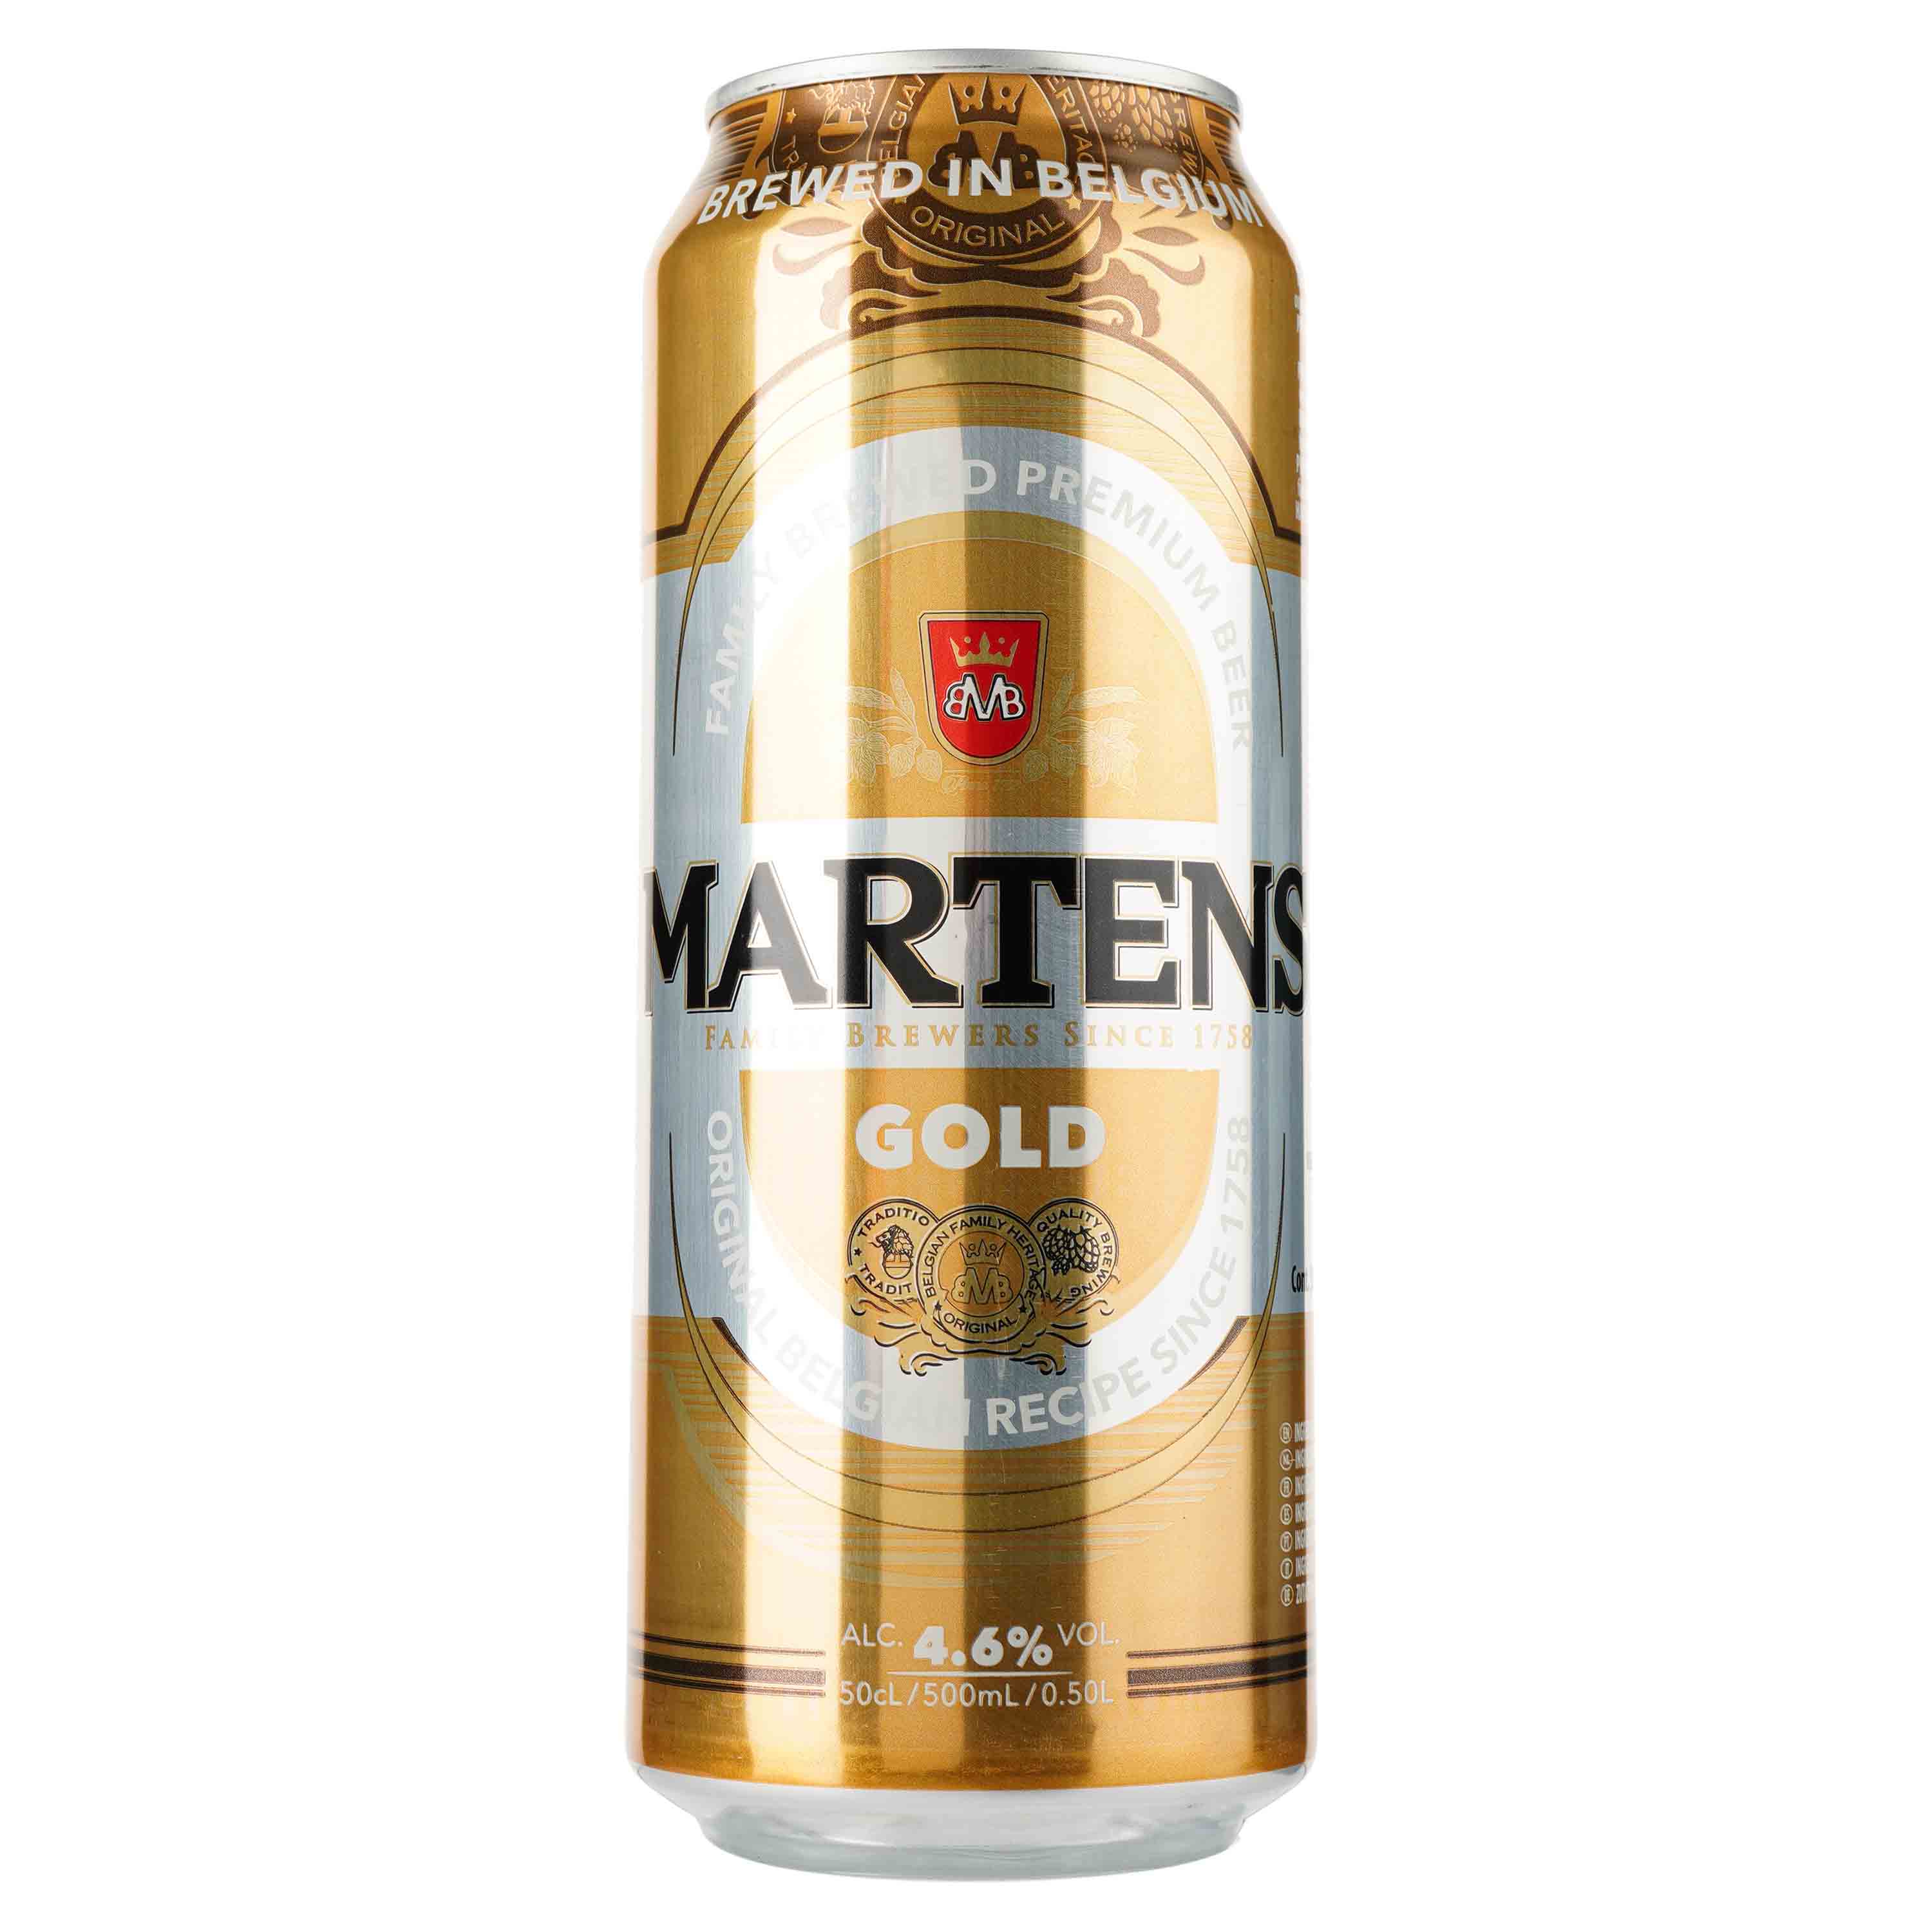 Пиво Martens Gold, светлое, фильтрованное, 4,6%, ж/б, 0,5 л - фото 1